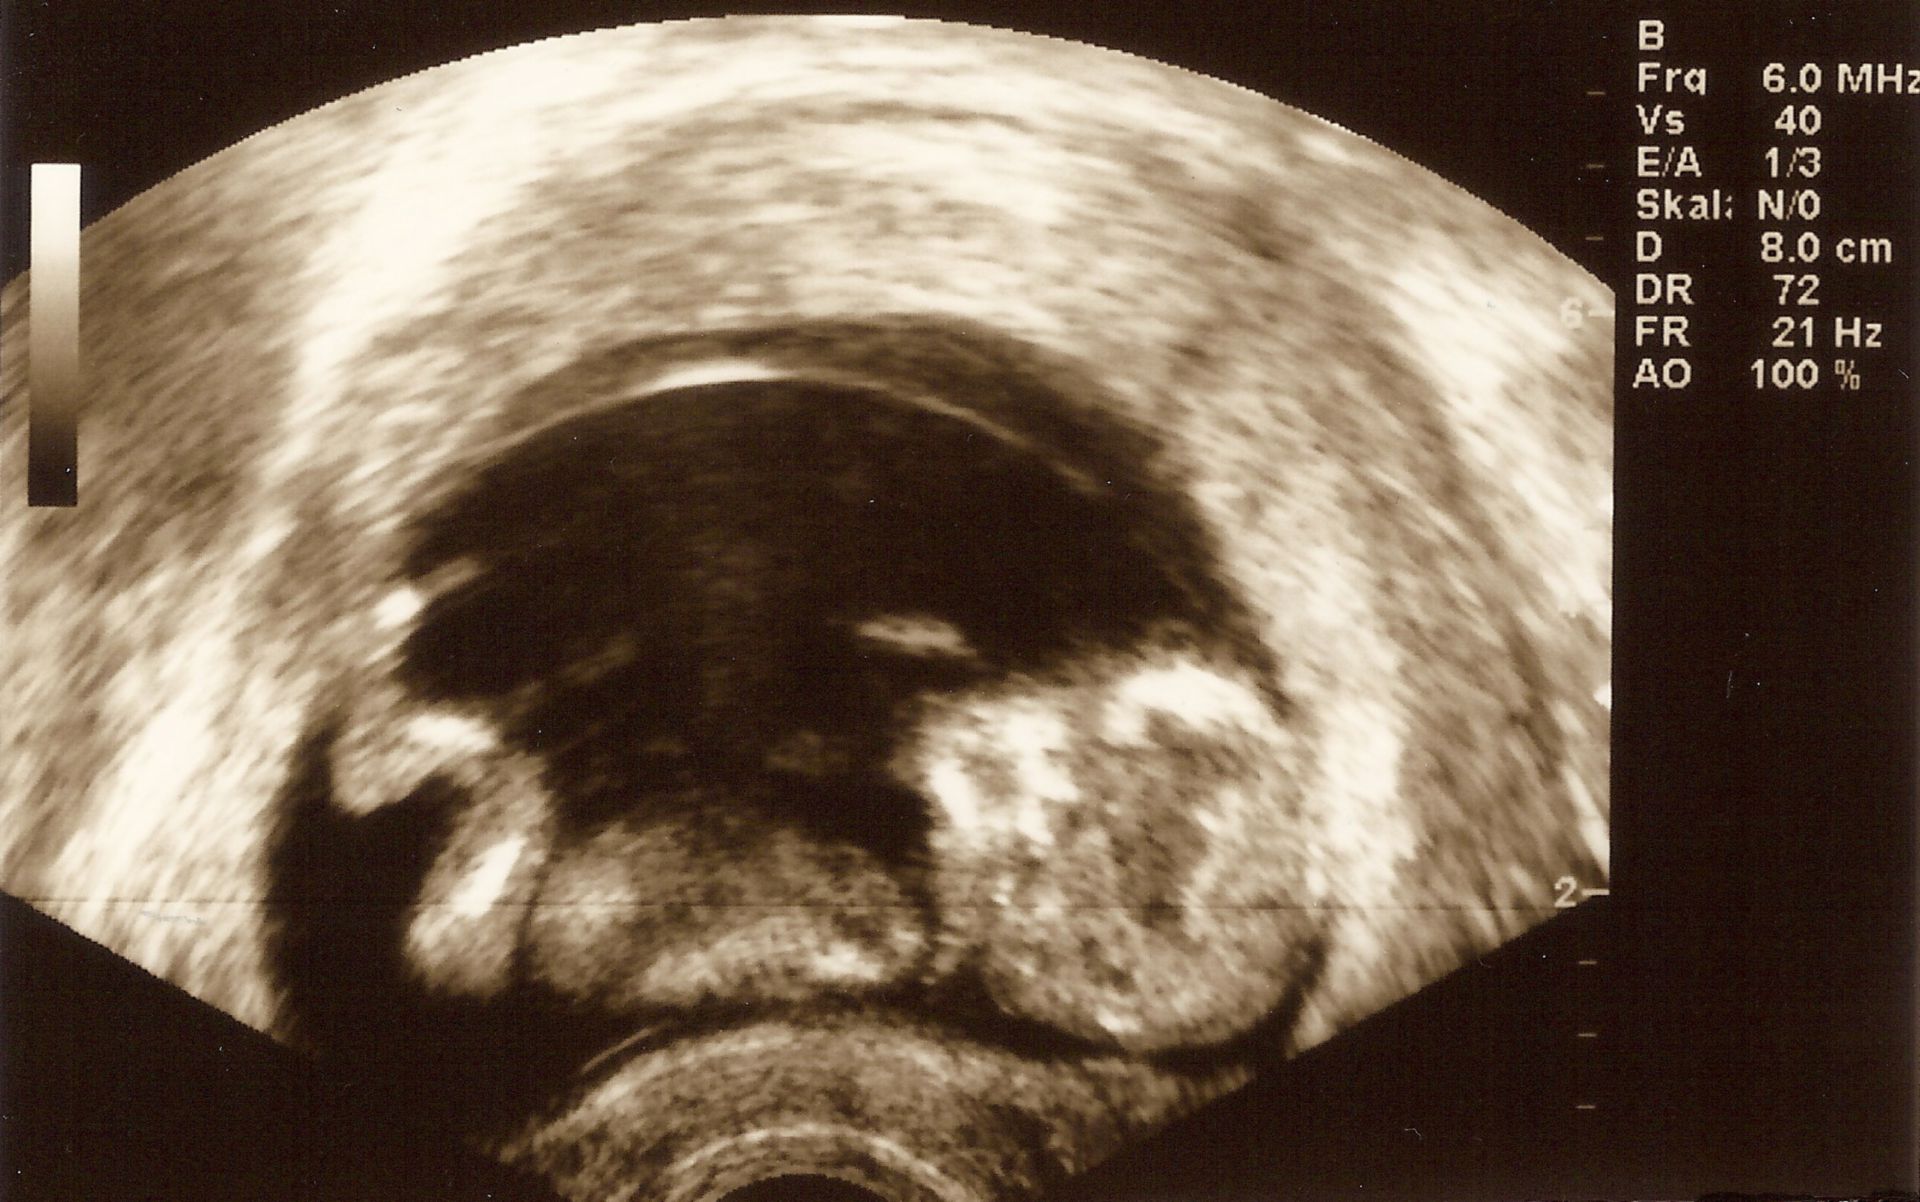 12 week old fetus ultrasound